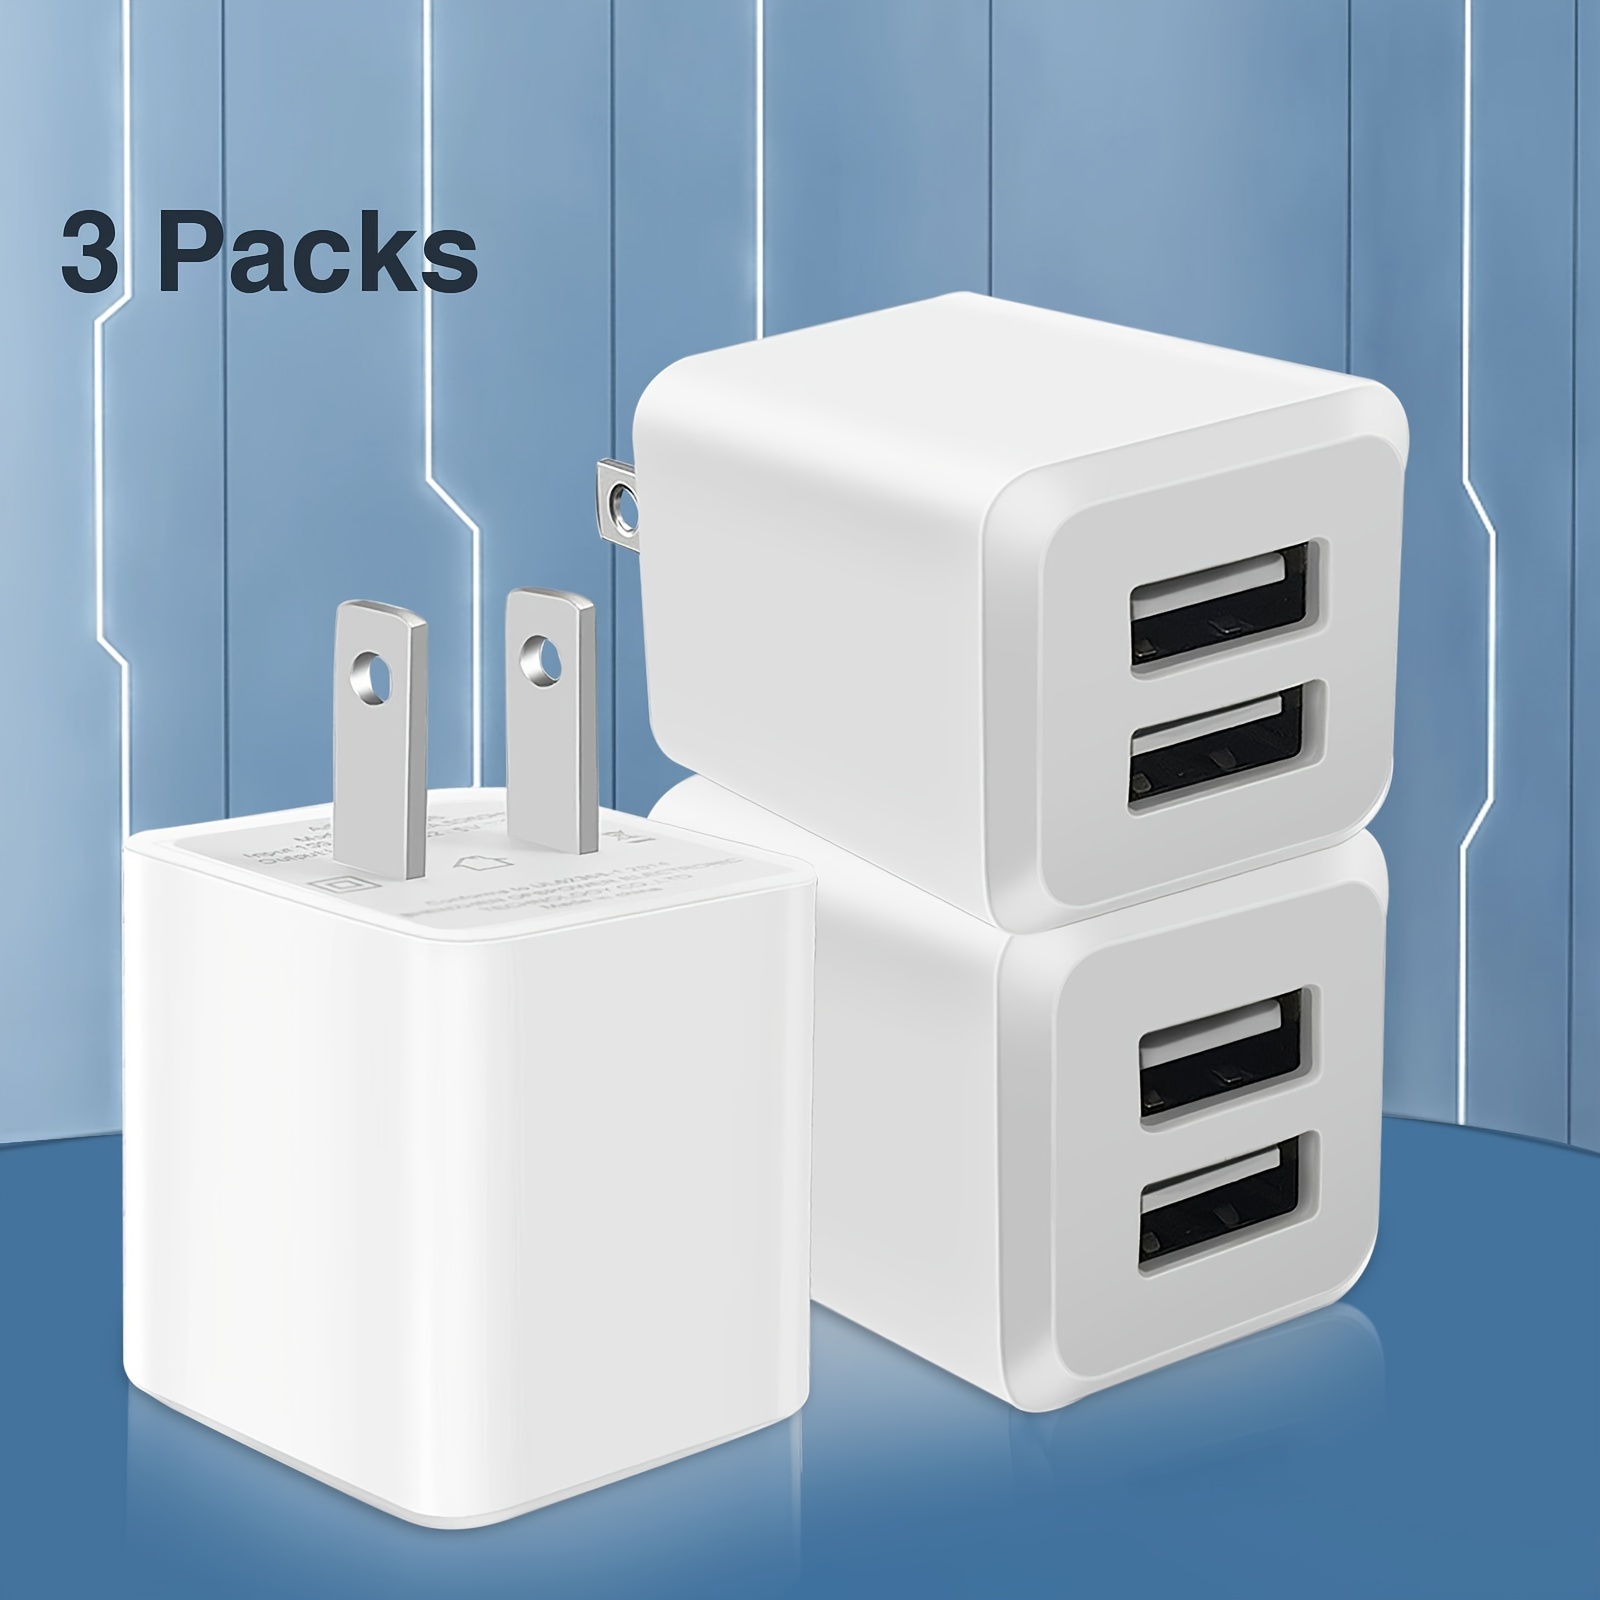 Cargador de pared USB, bloque de carga, enchufe de cargador doble, cargador  USB dual, paquete de 4 unidades de 2.1A/5V base de caja de carga para